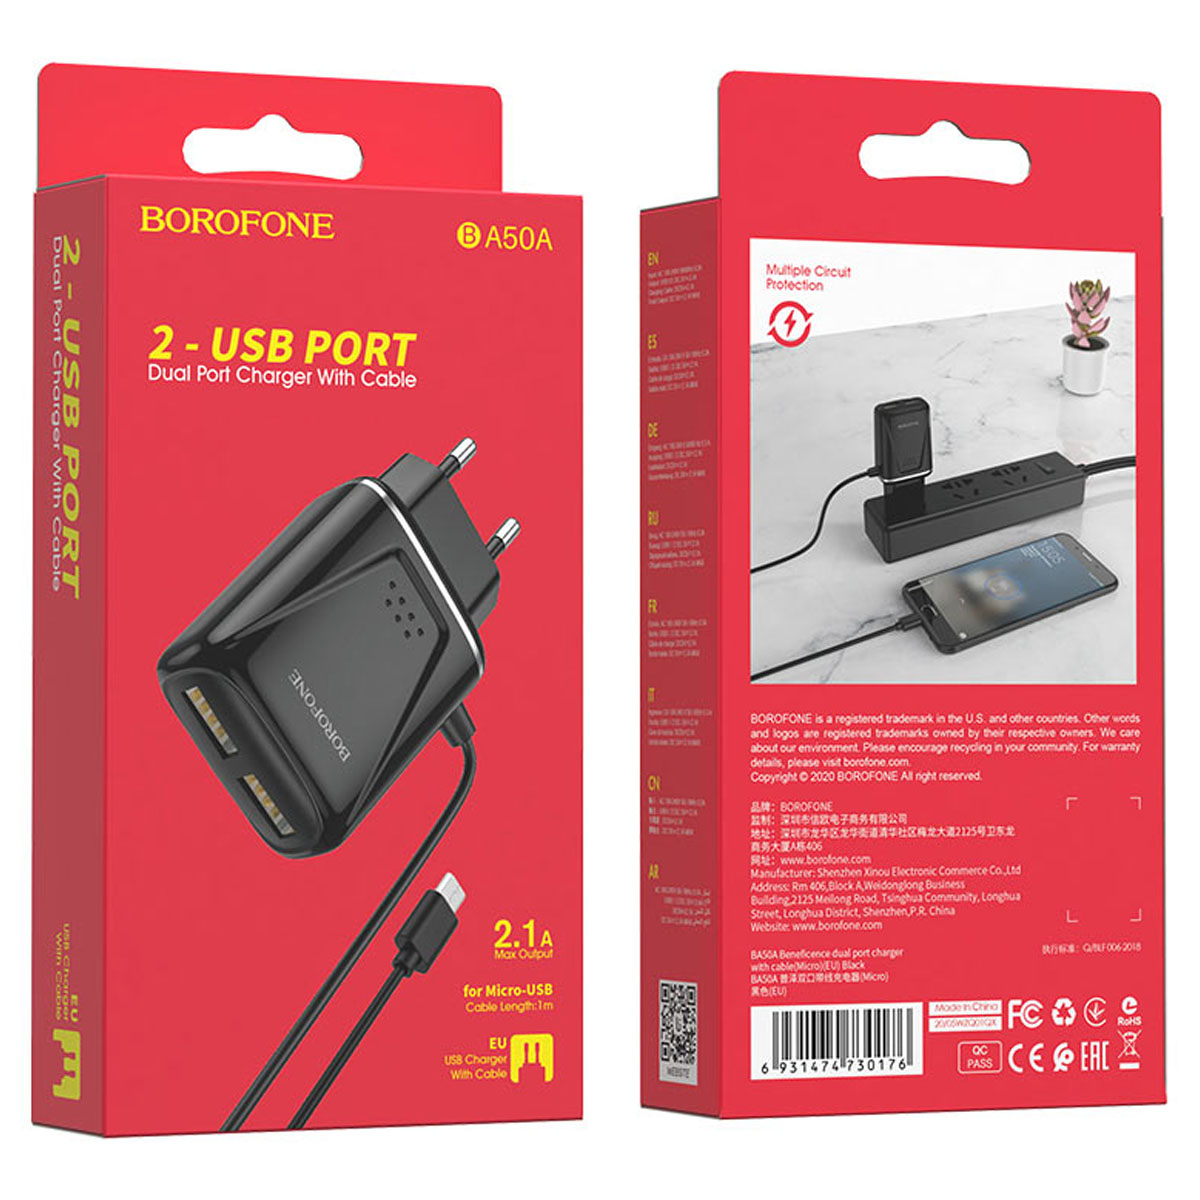 СЗУ (Сетевое зарядное устройство) BOROFONE BA50A Beneficence со встроенным кабелем Micro USB, 2.1A, 2 USB, длина 1 метр, цвет черный